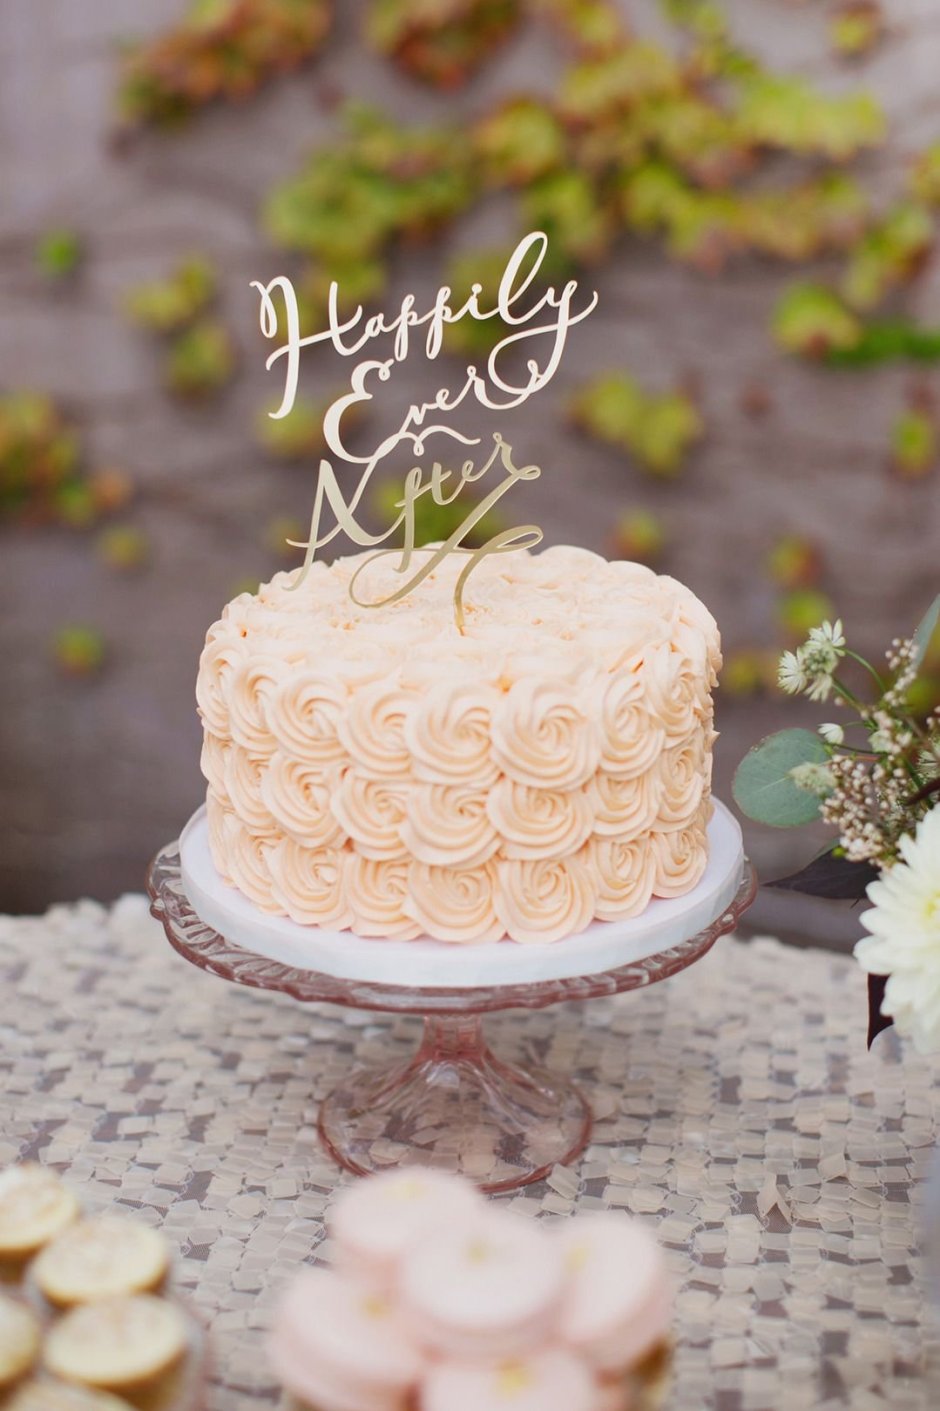 Одноярусный свадебный торт с топпером